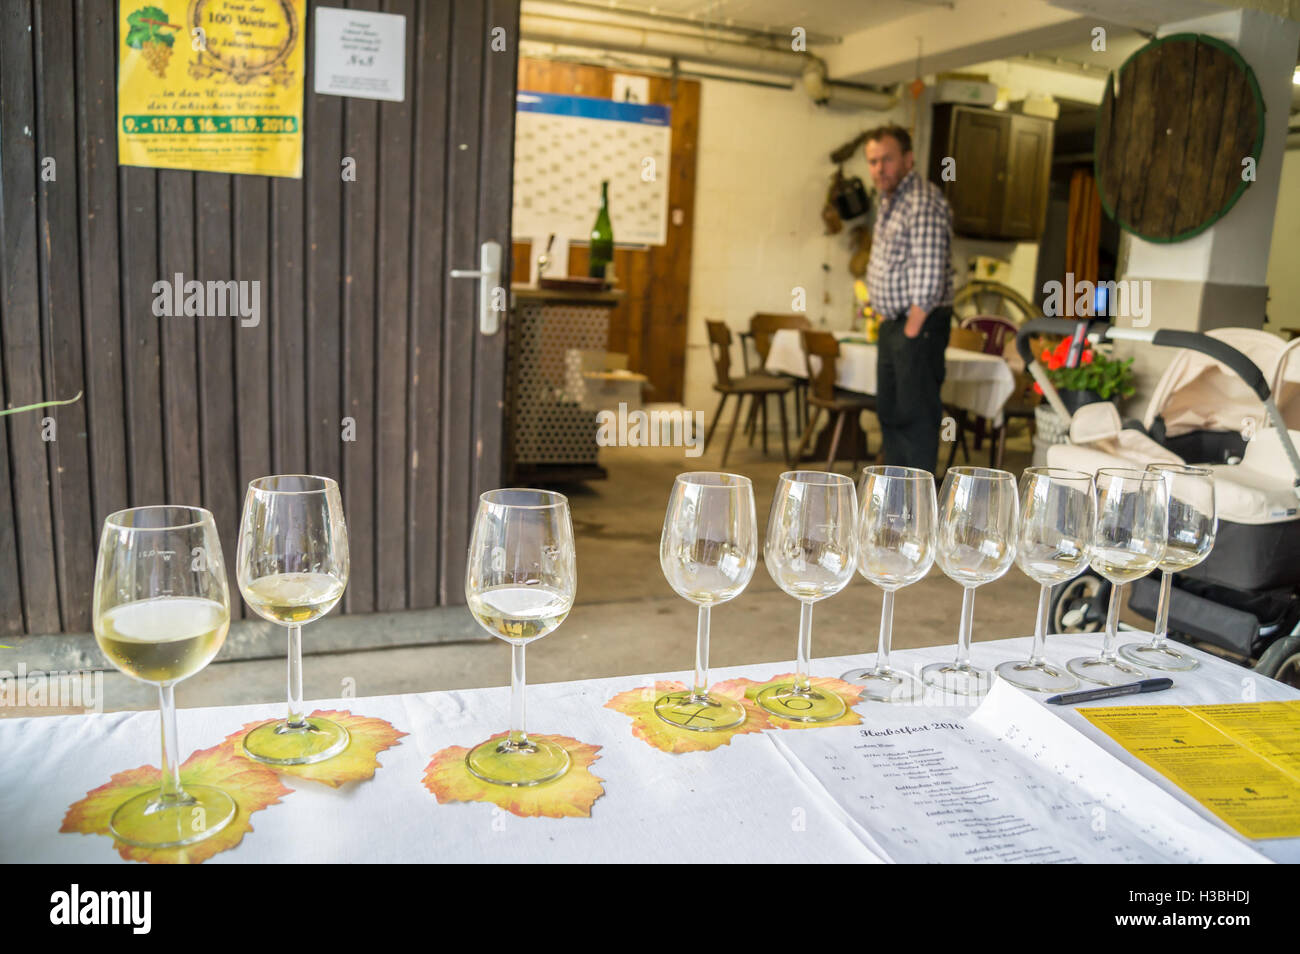 Un vol de Riesling à Weingut Erhard Bartz, Enkirch, Moselle, Rheinland-Pfalz, Allemagne pub boissons verres de table Banque D'Images